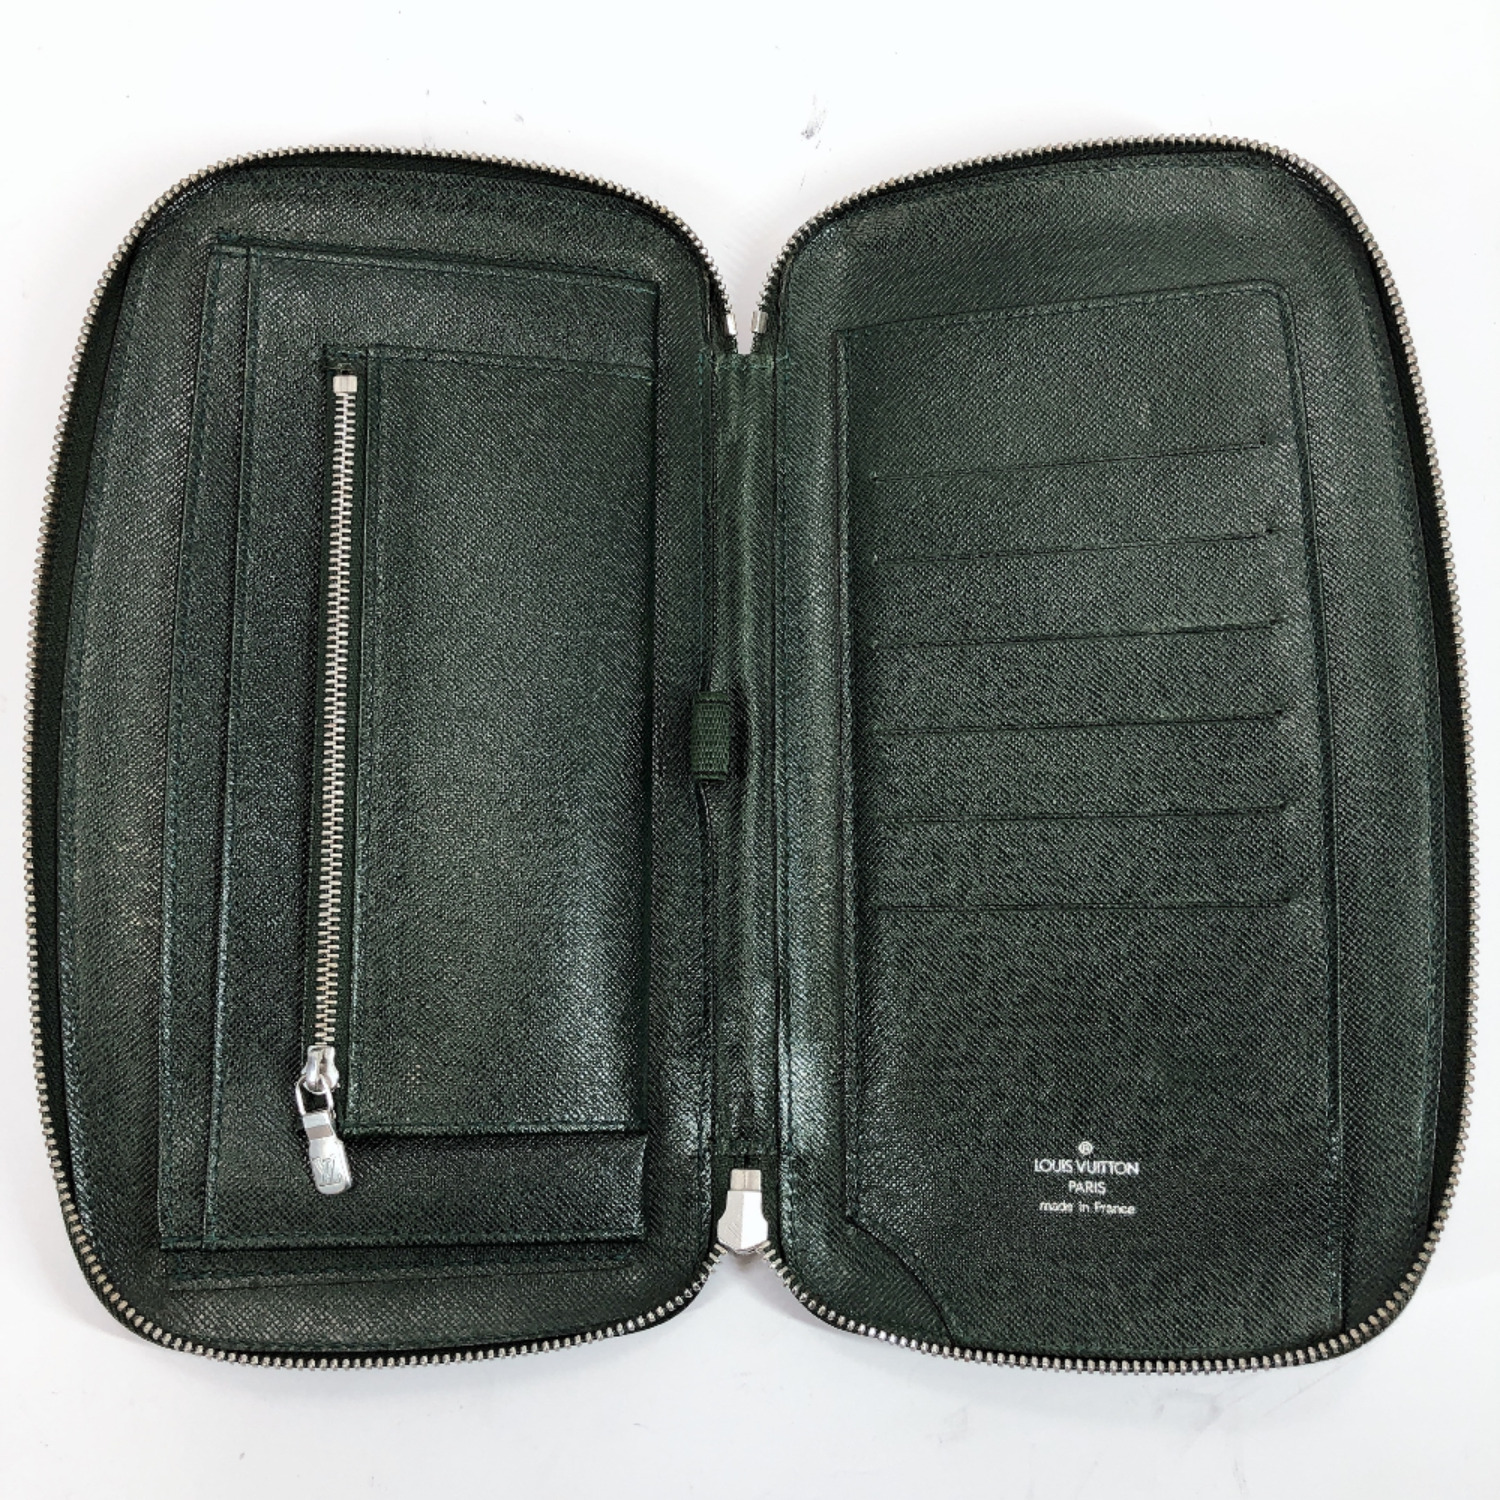 LOUIS VUITTON Clutch bag M30654 Organizer Atoll Travel case Taiga mens | eBay